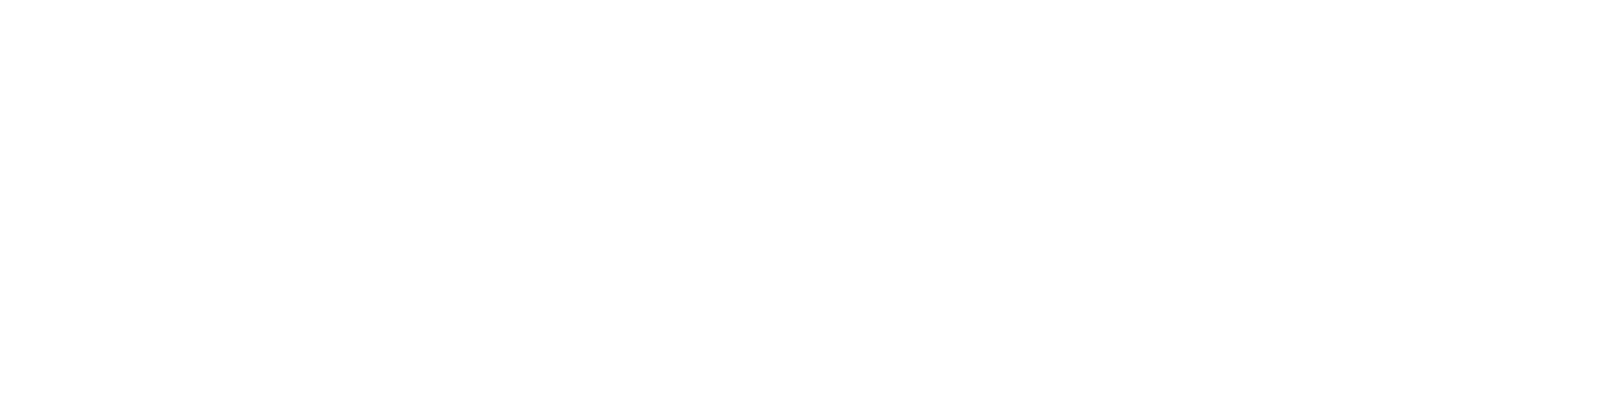 Aerojet Rocketdyne logo large for dark backgrounds (transparent PNG)